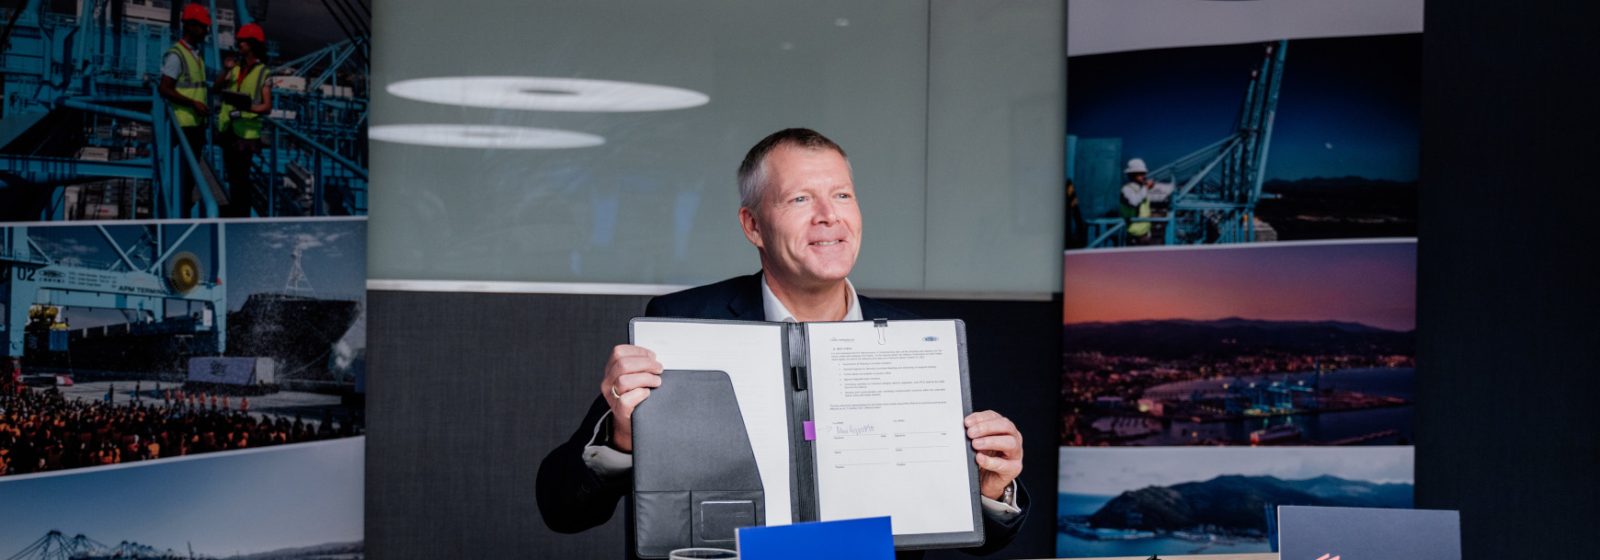 Morten Engelstoft, CEO van APM Terminals, tijdens de virtuele ondertekening van de samenwerking met ZPMC